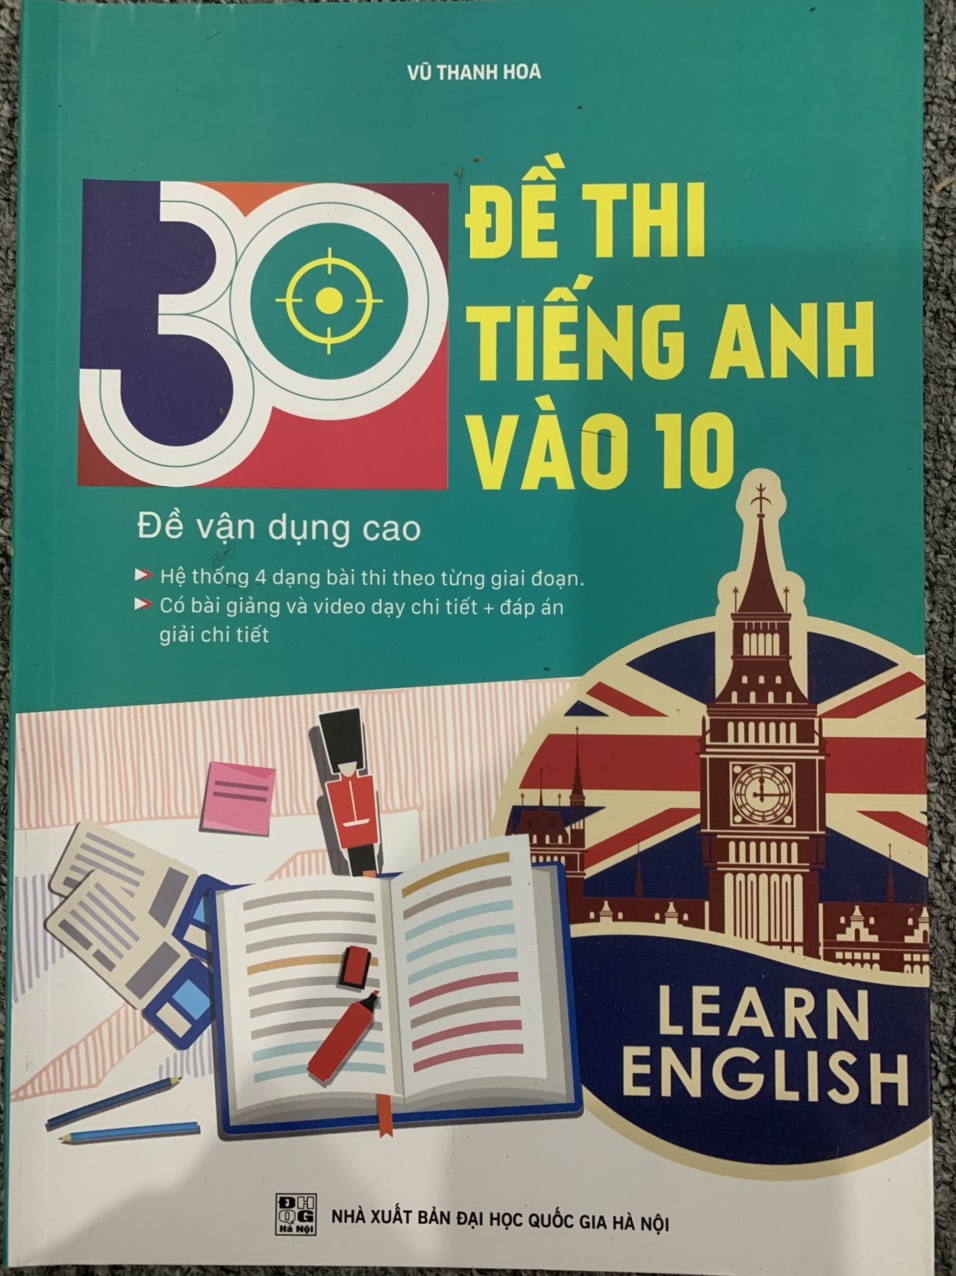 30 Đề thi Tiếng Anh vào 10 (Đề vận dụng cao)